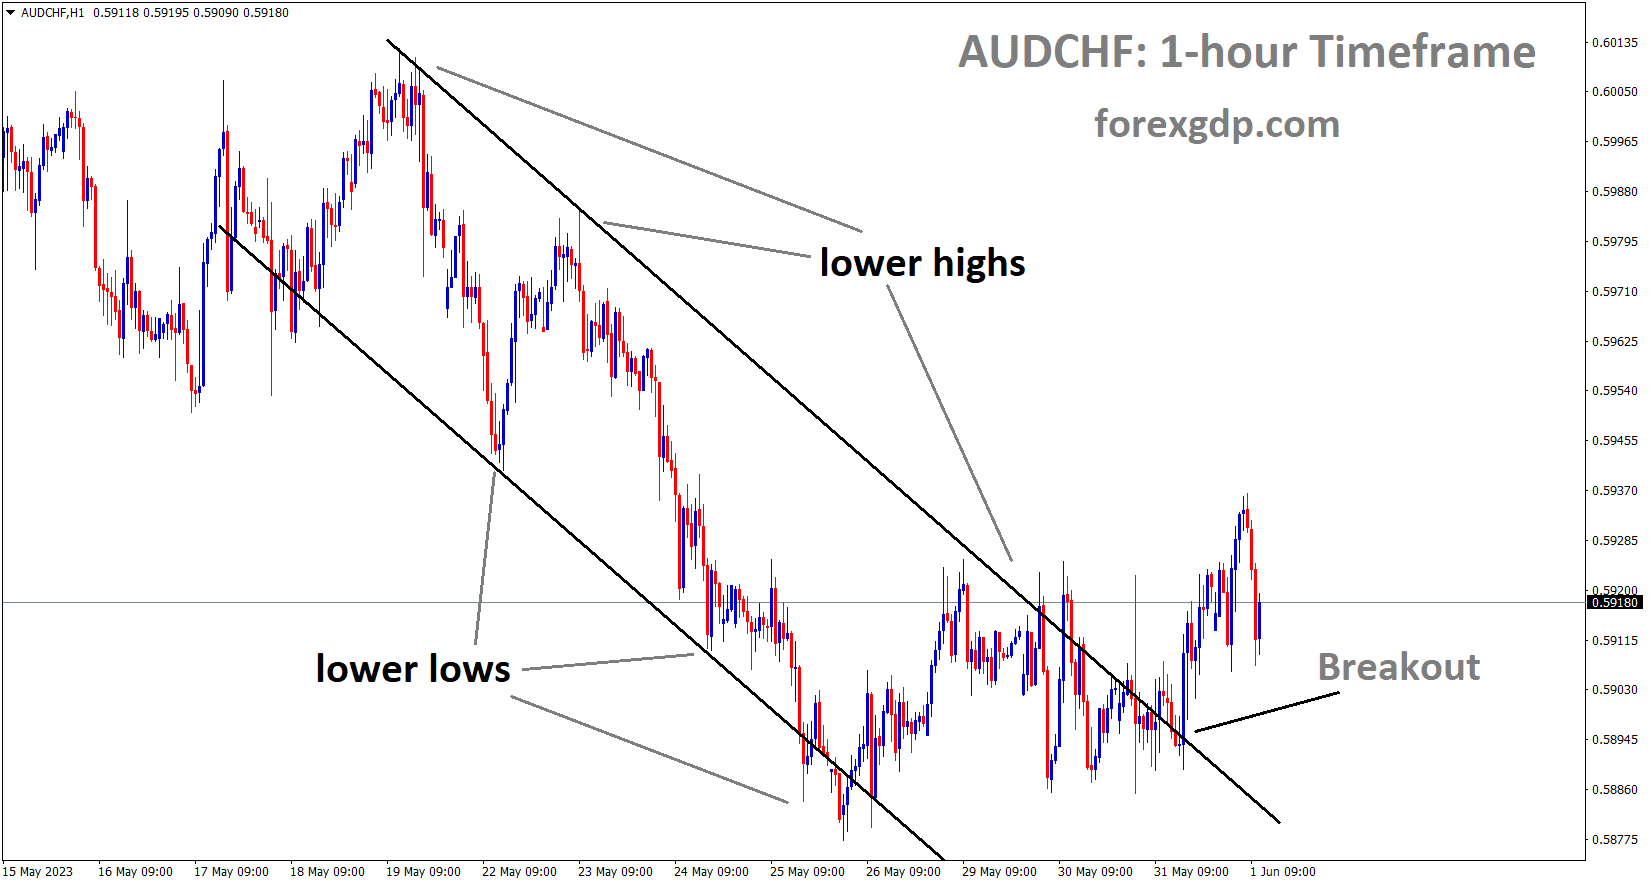 AUDCHF has broken the Descending channel in upside